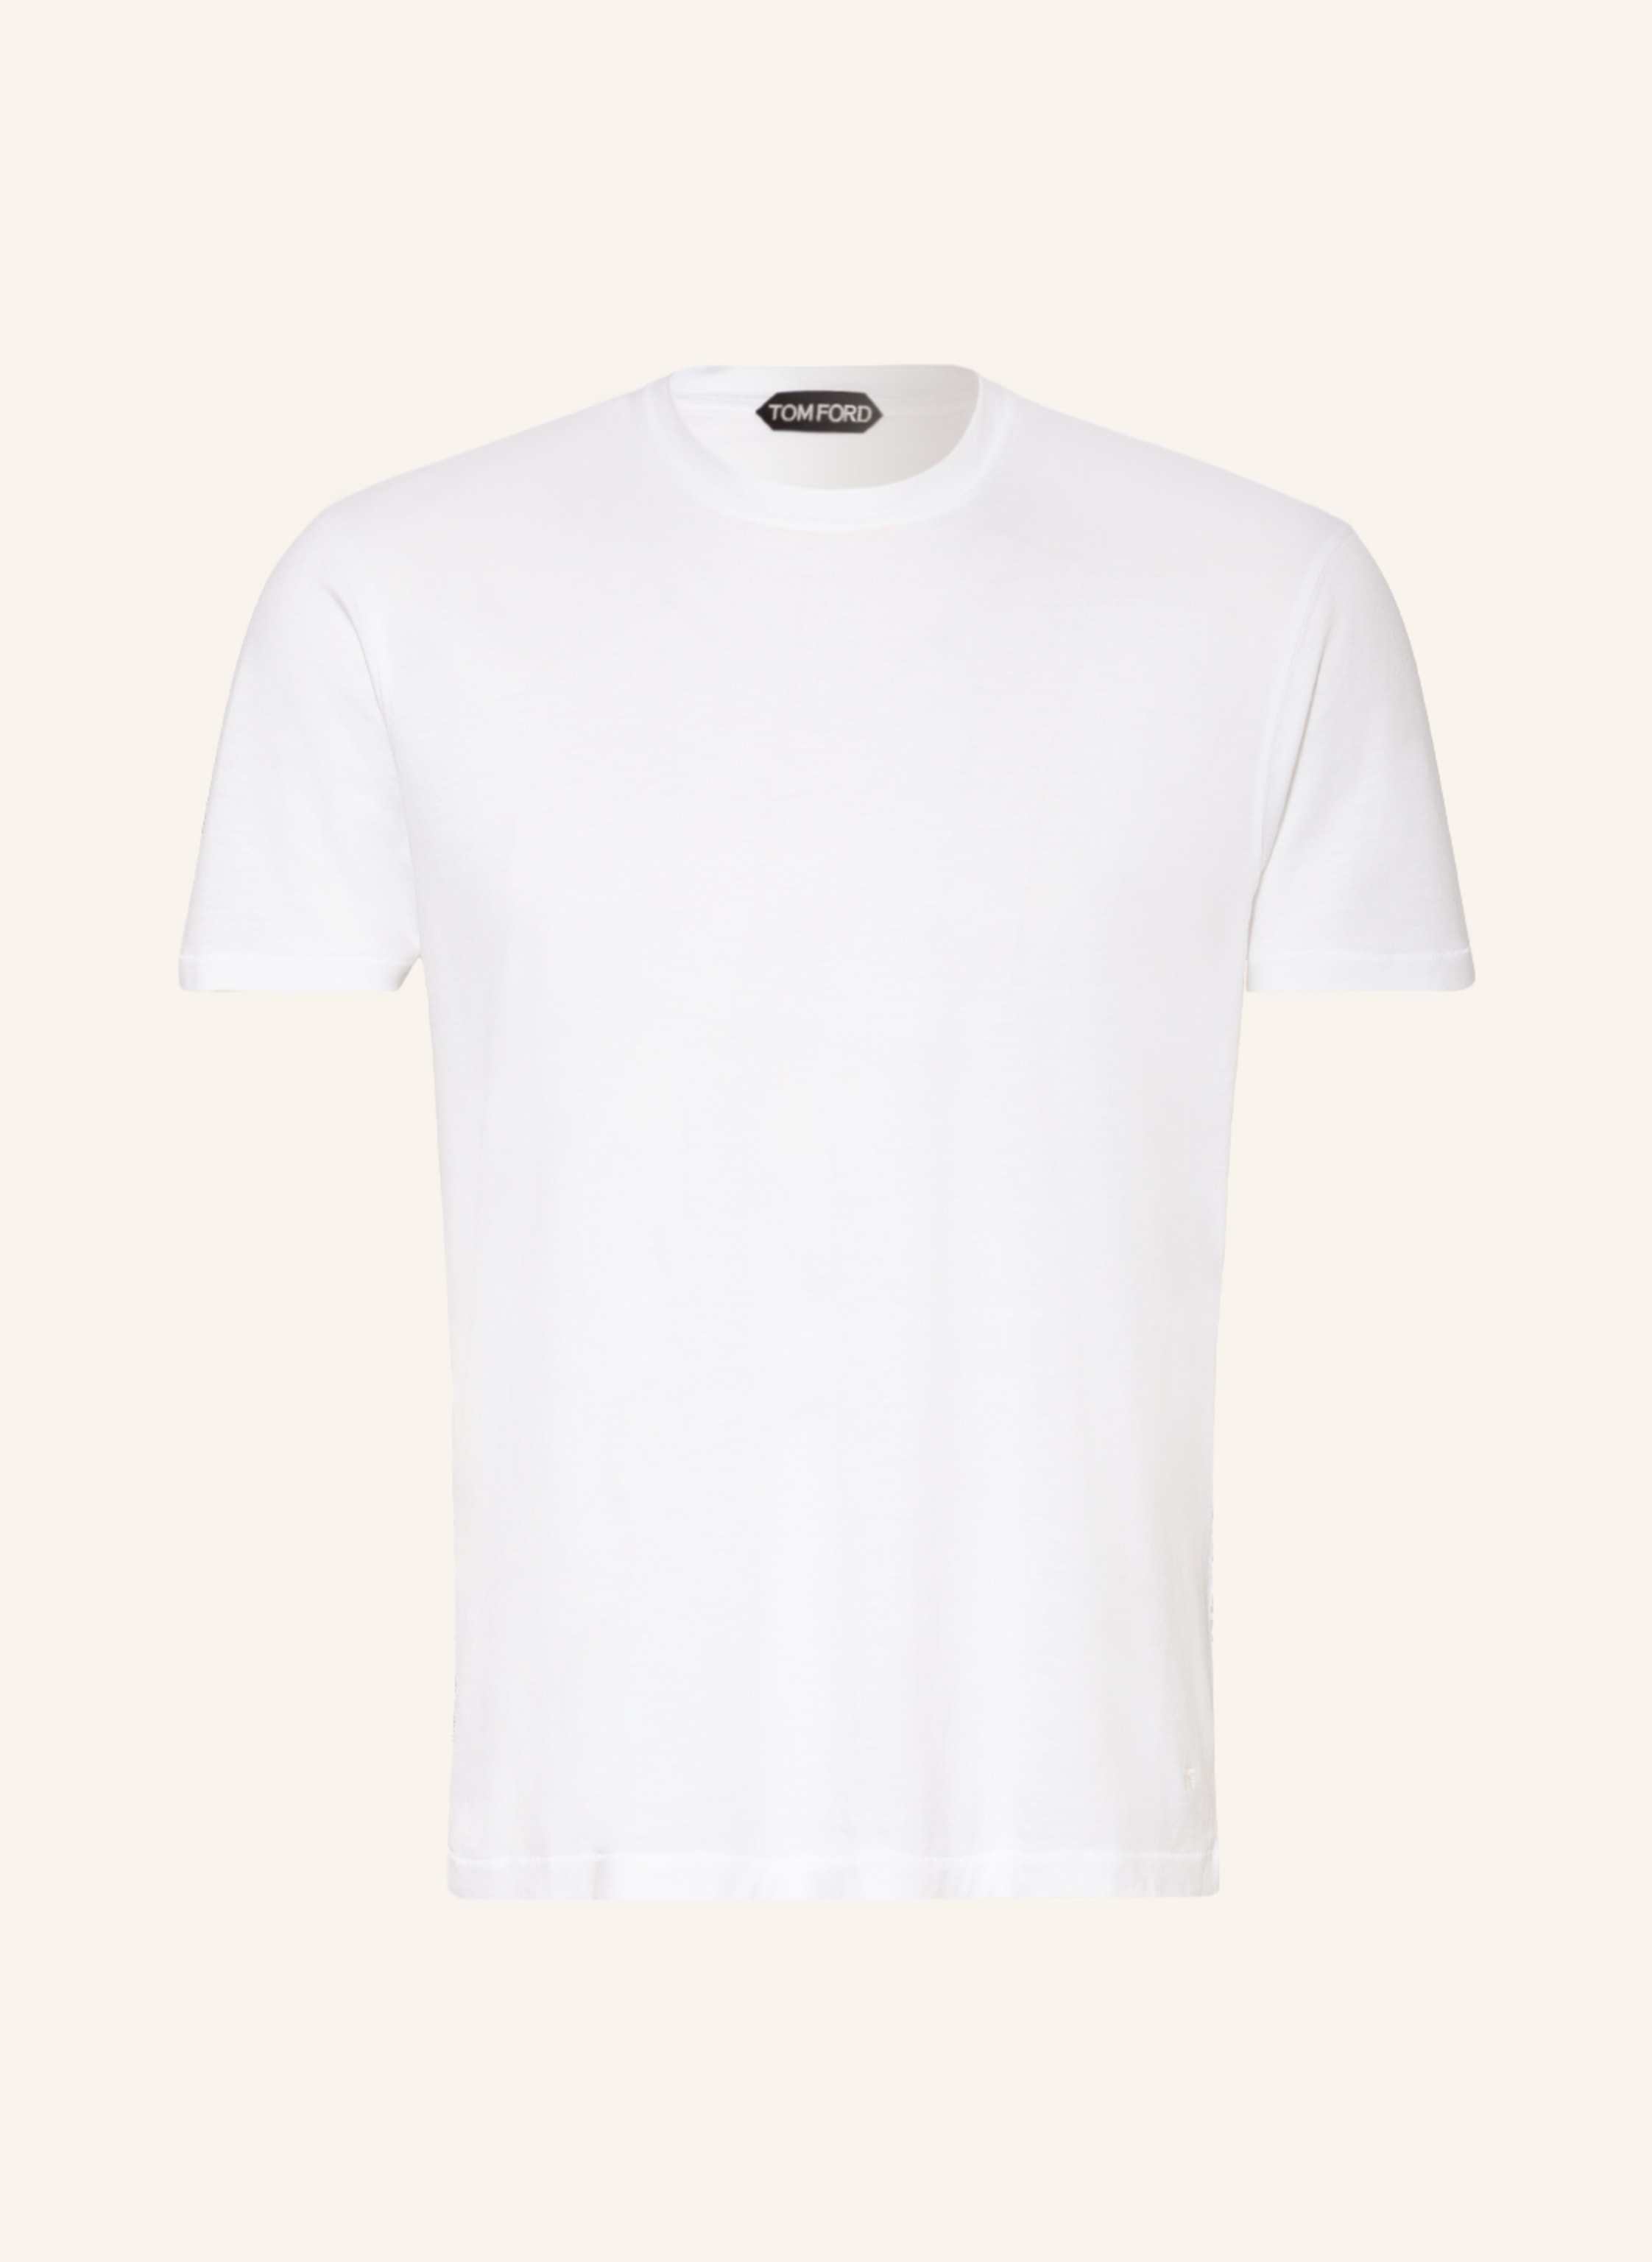 TOM FORD T-shirt in white | Breuninger